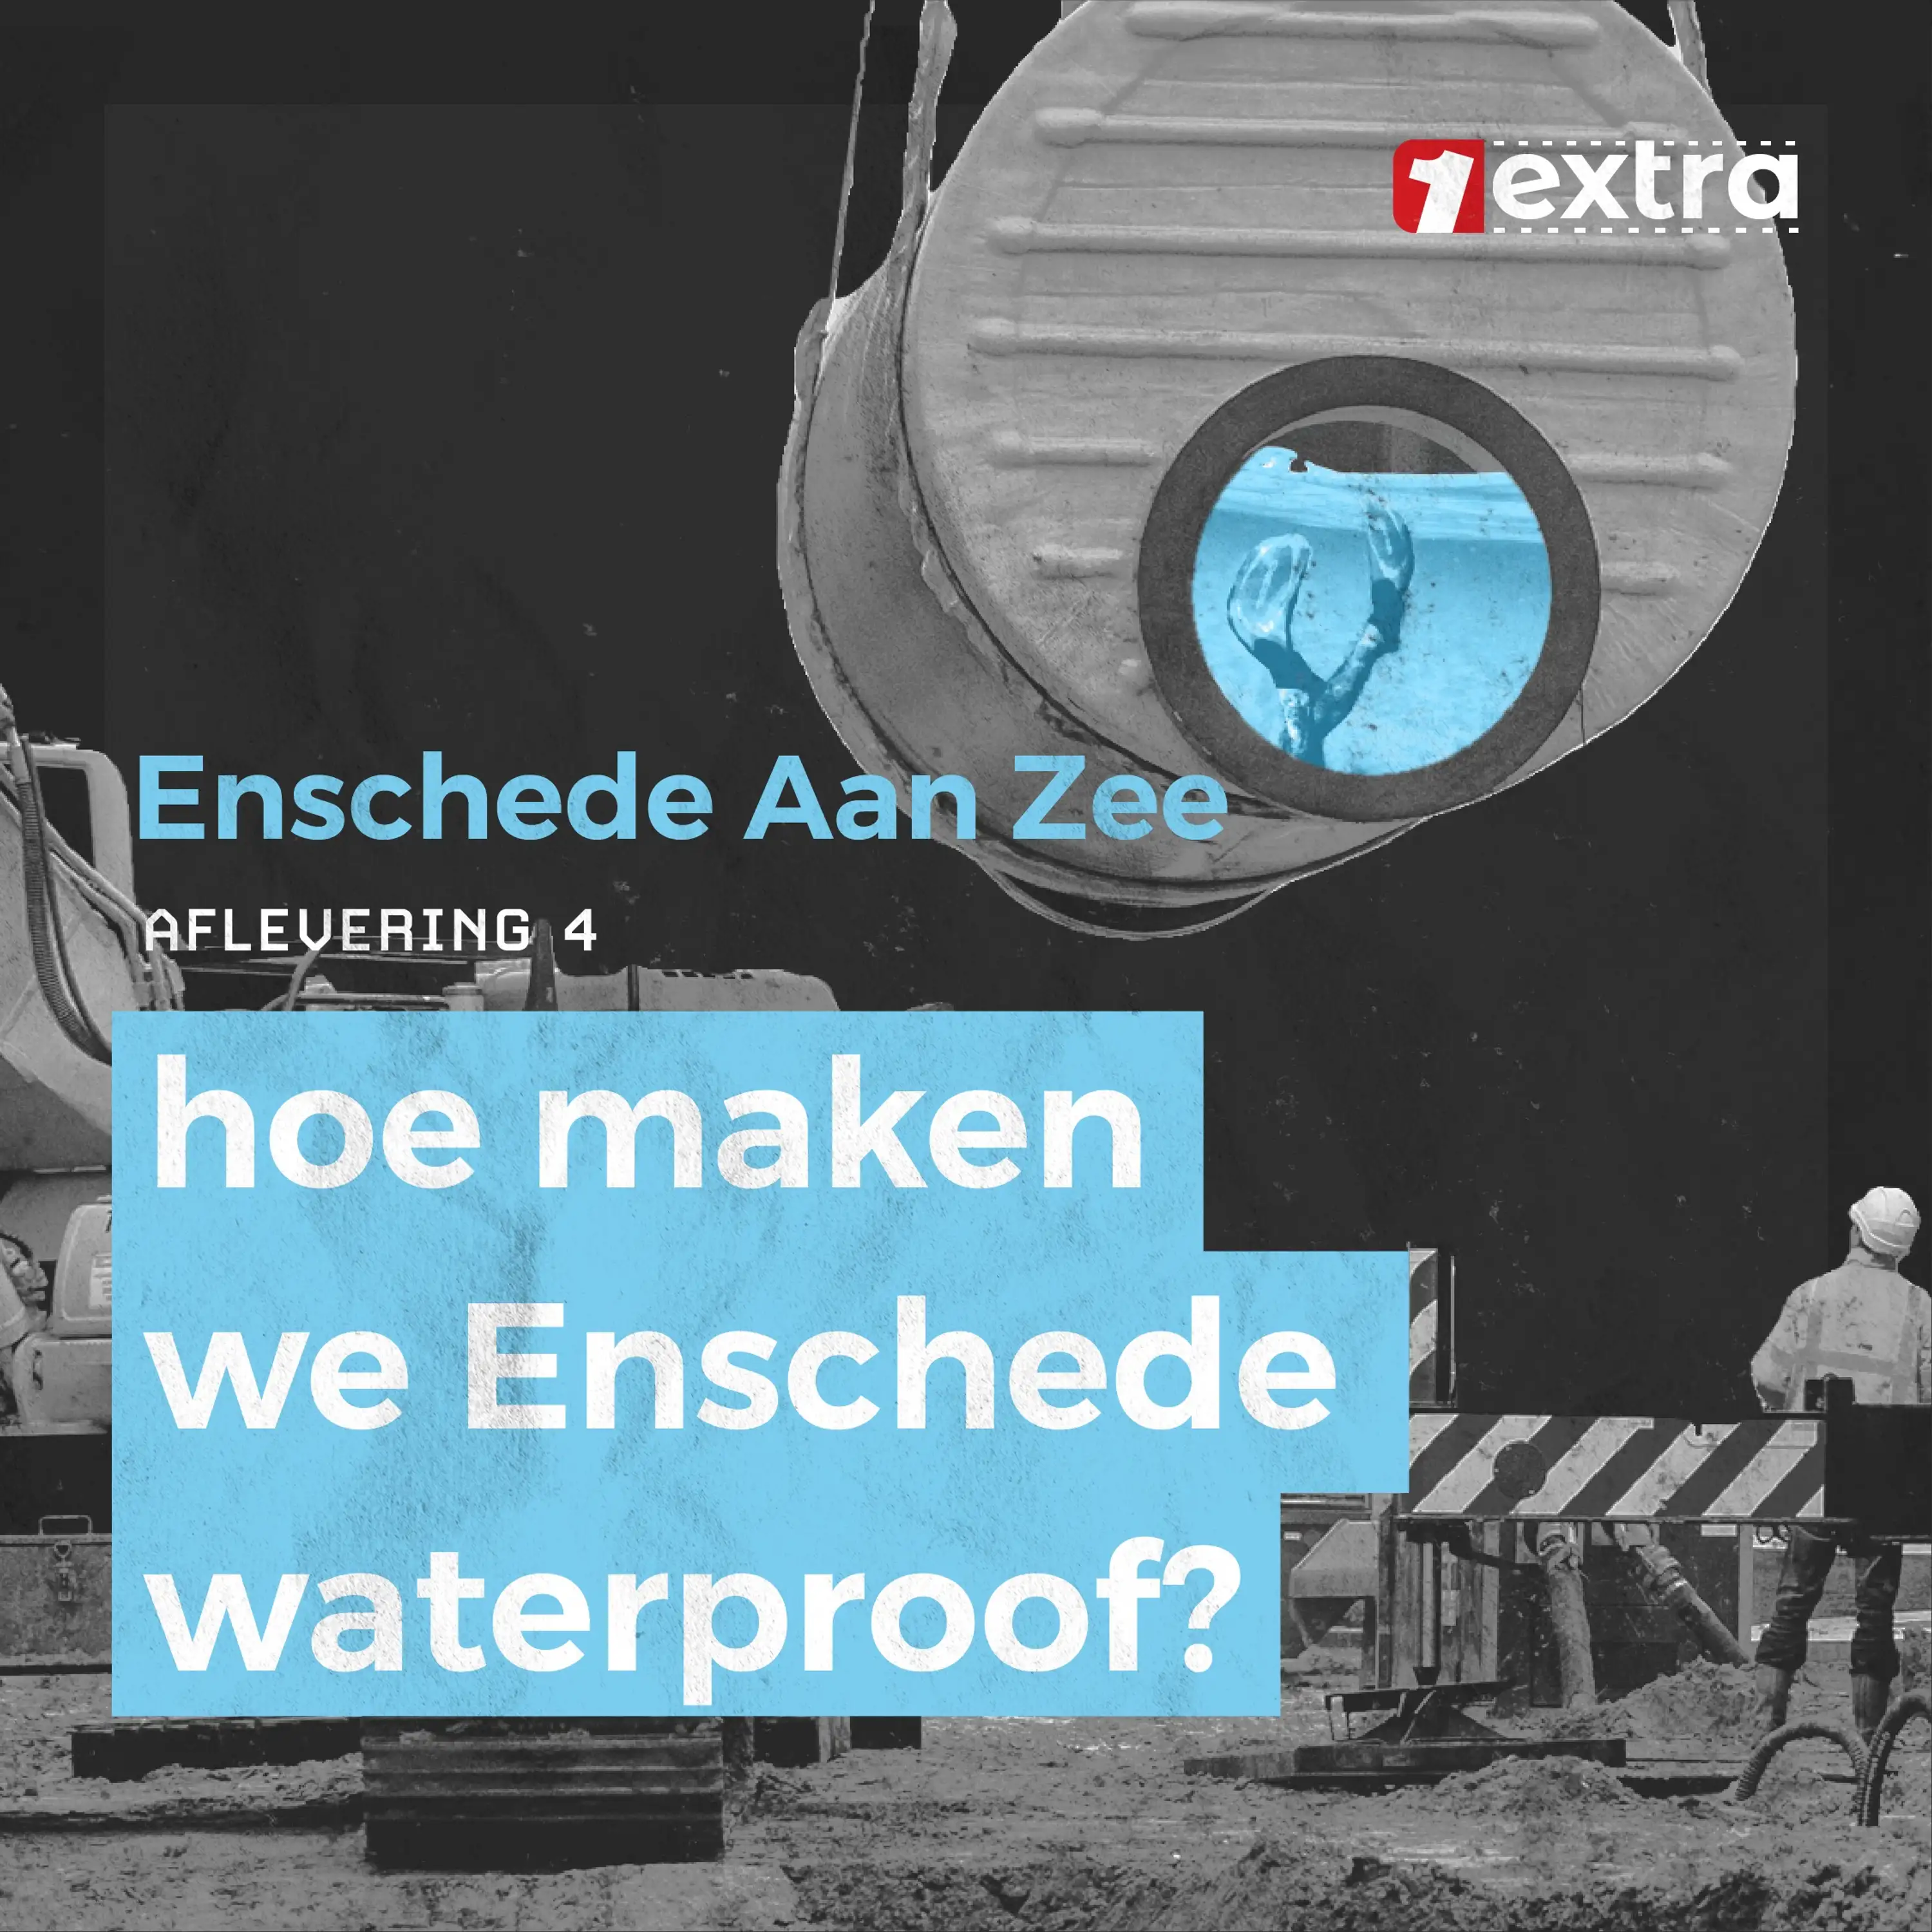 #4 Hoe maken we Enschede waterproof?